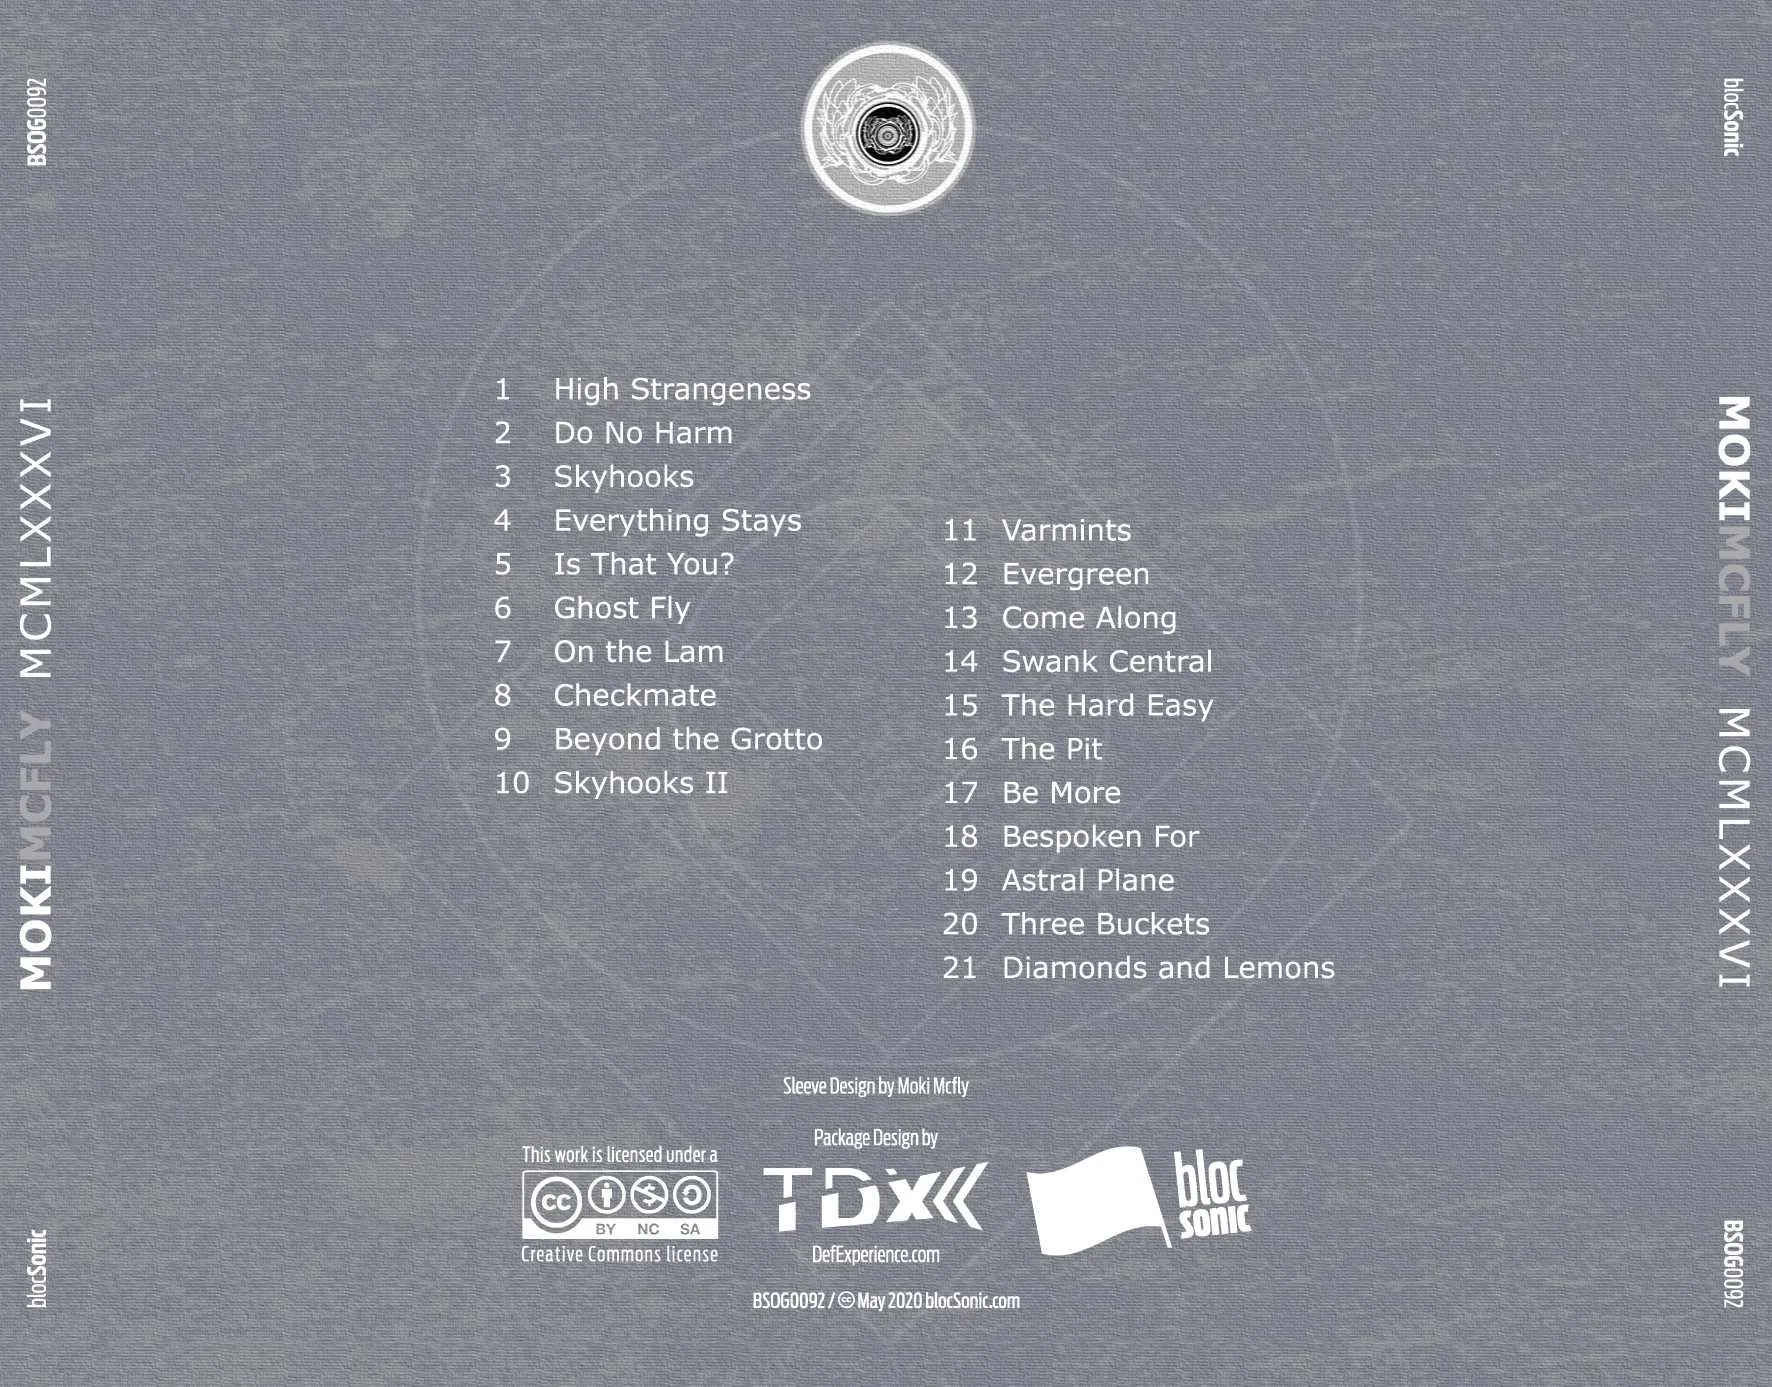 Album traycard for “MCMLXXXVI” by Moki Mcfly